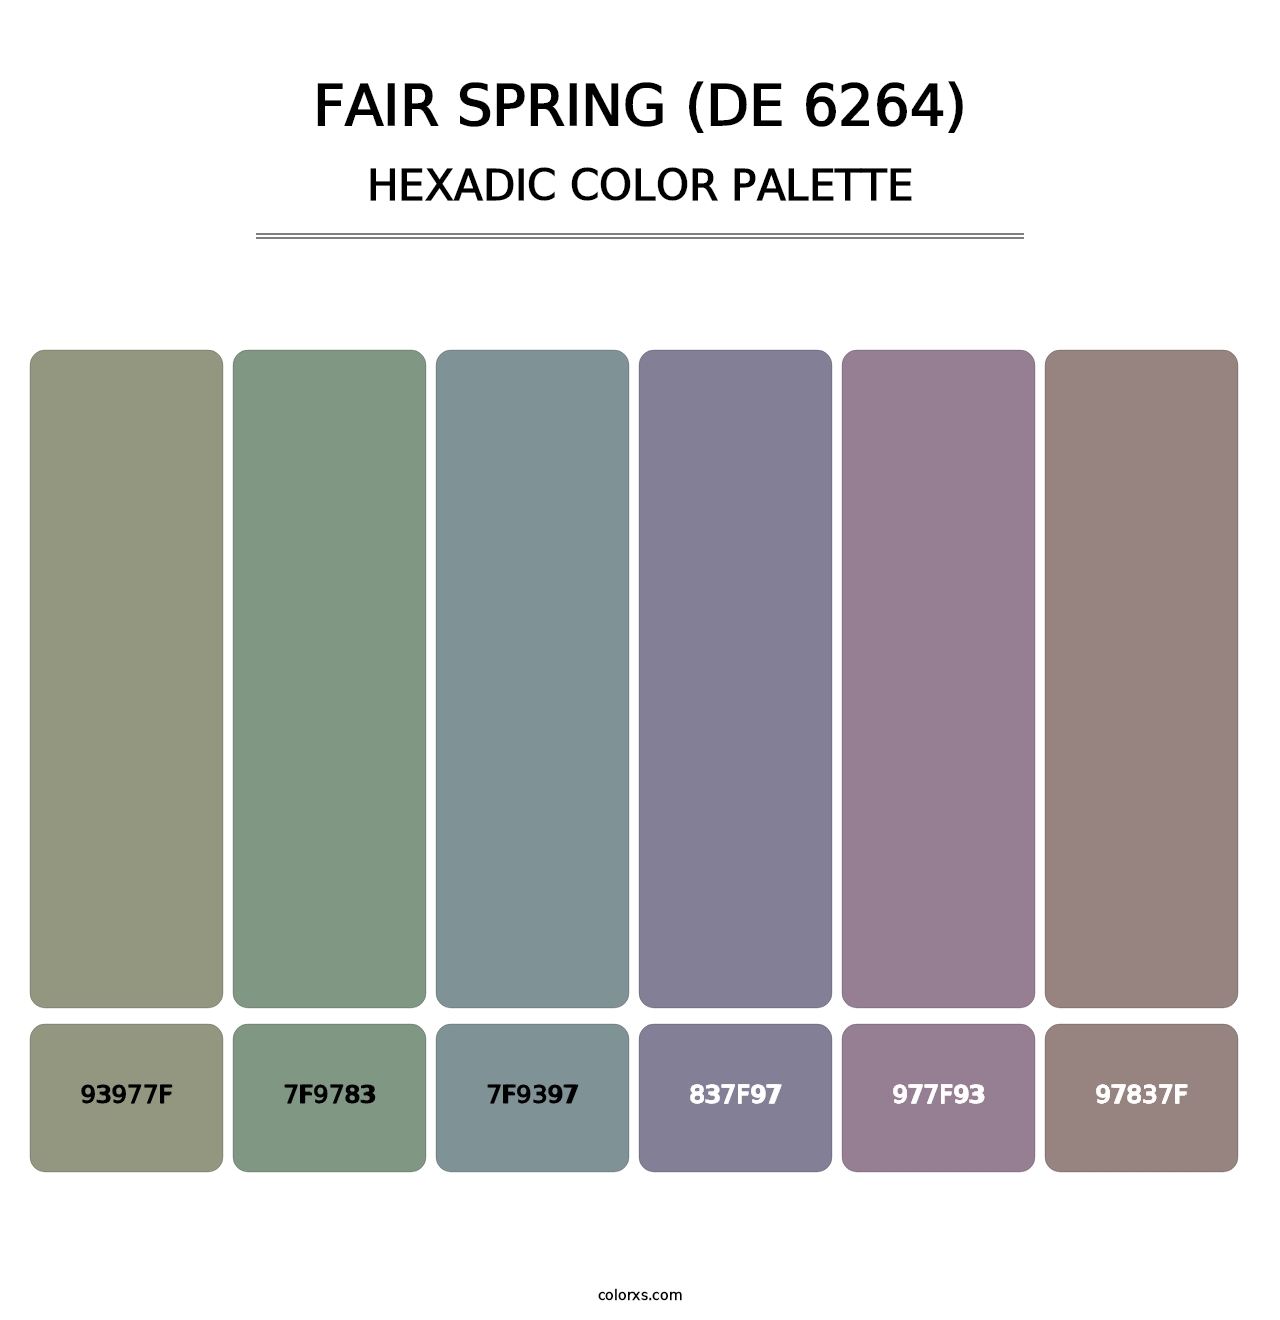 Fair Spring (DE 6264) - Hexadic Color Palette